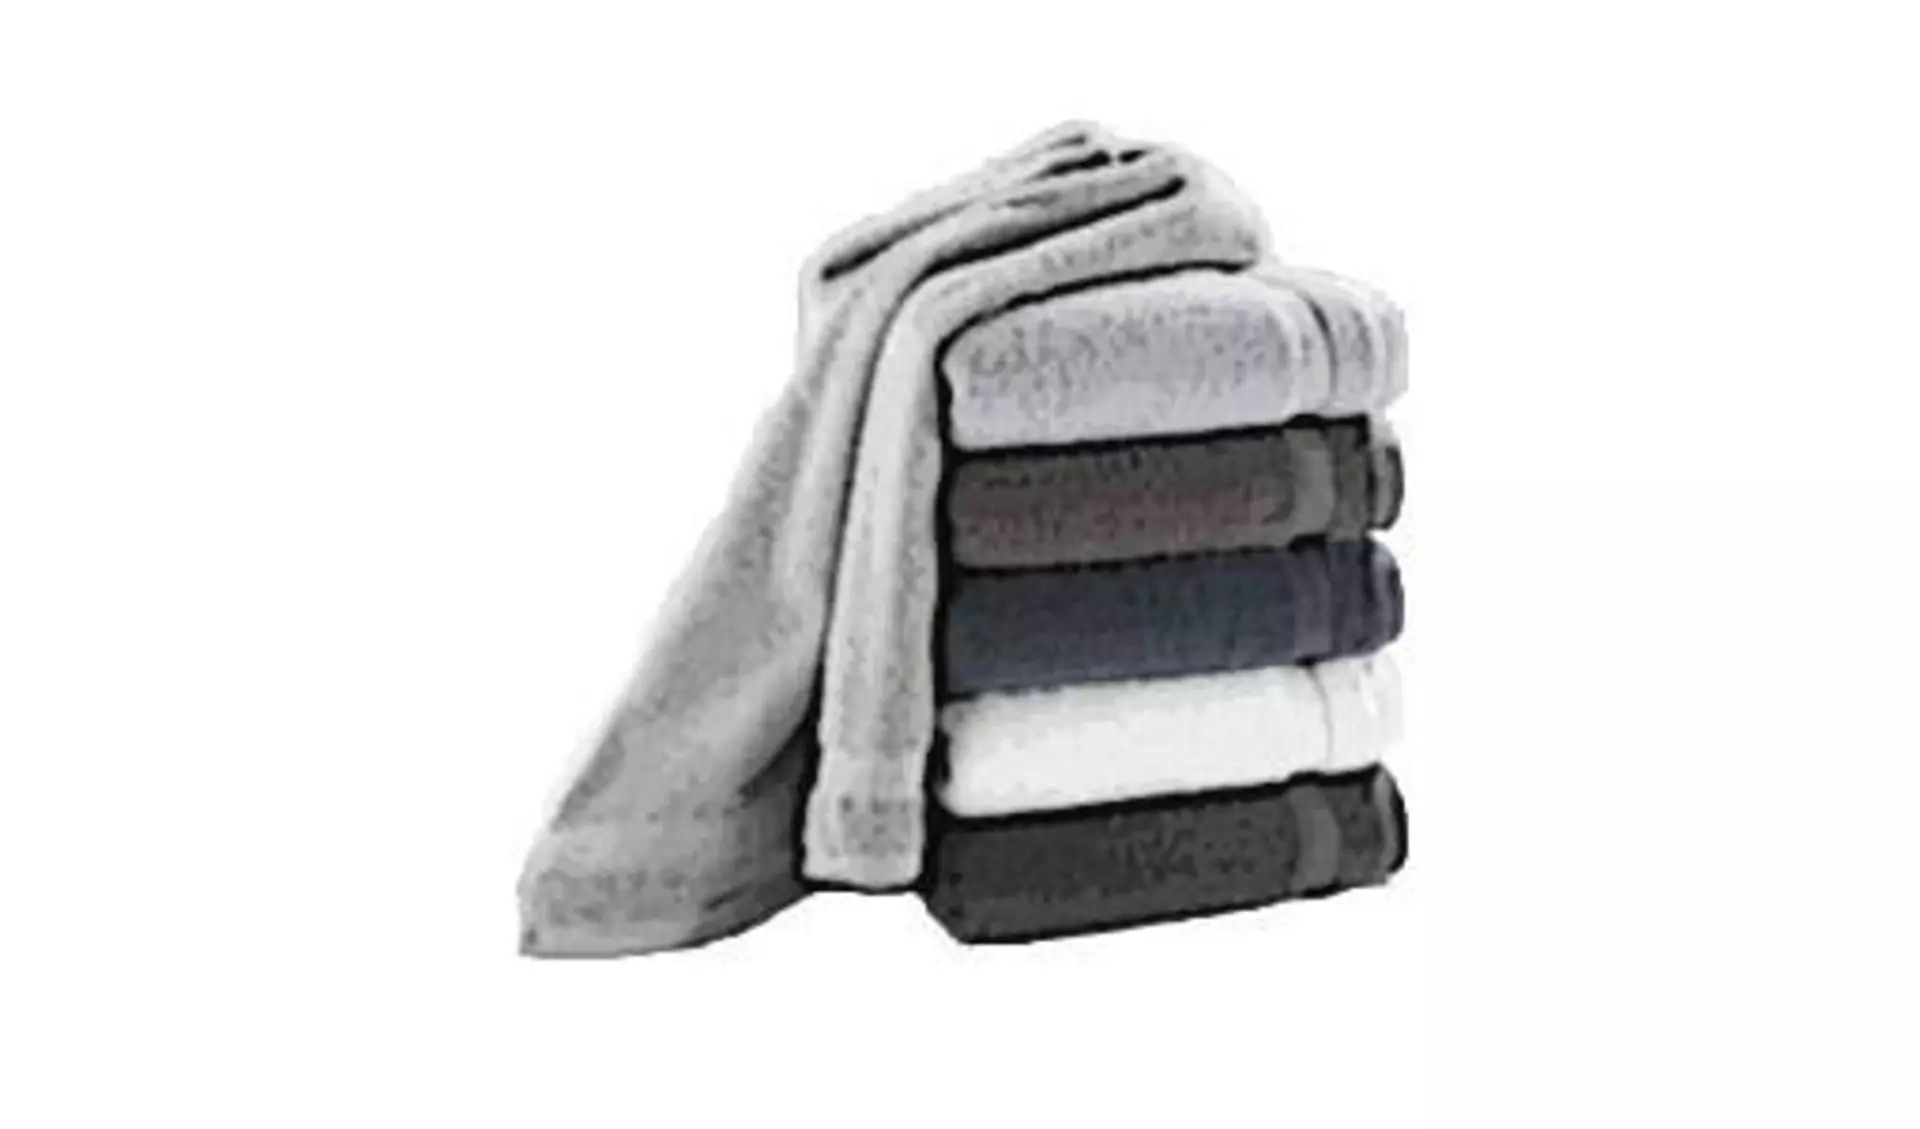 Badtextilien hier abgebildet als aufeinandergestapelte Handtücher in unterschiedlichen Grautönen. Das oberste Handtuch ist nicht zusammengelegt und hängt über die linke Seite am Stapel herab.